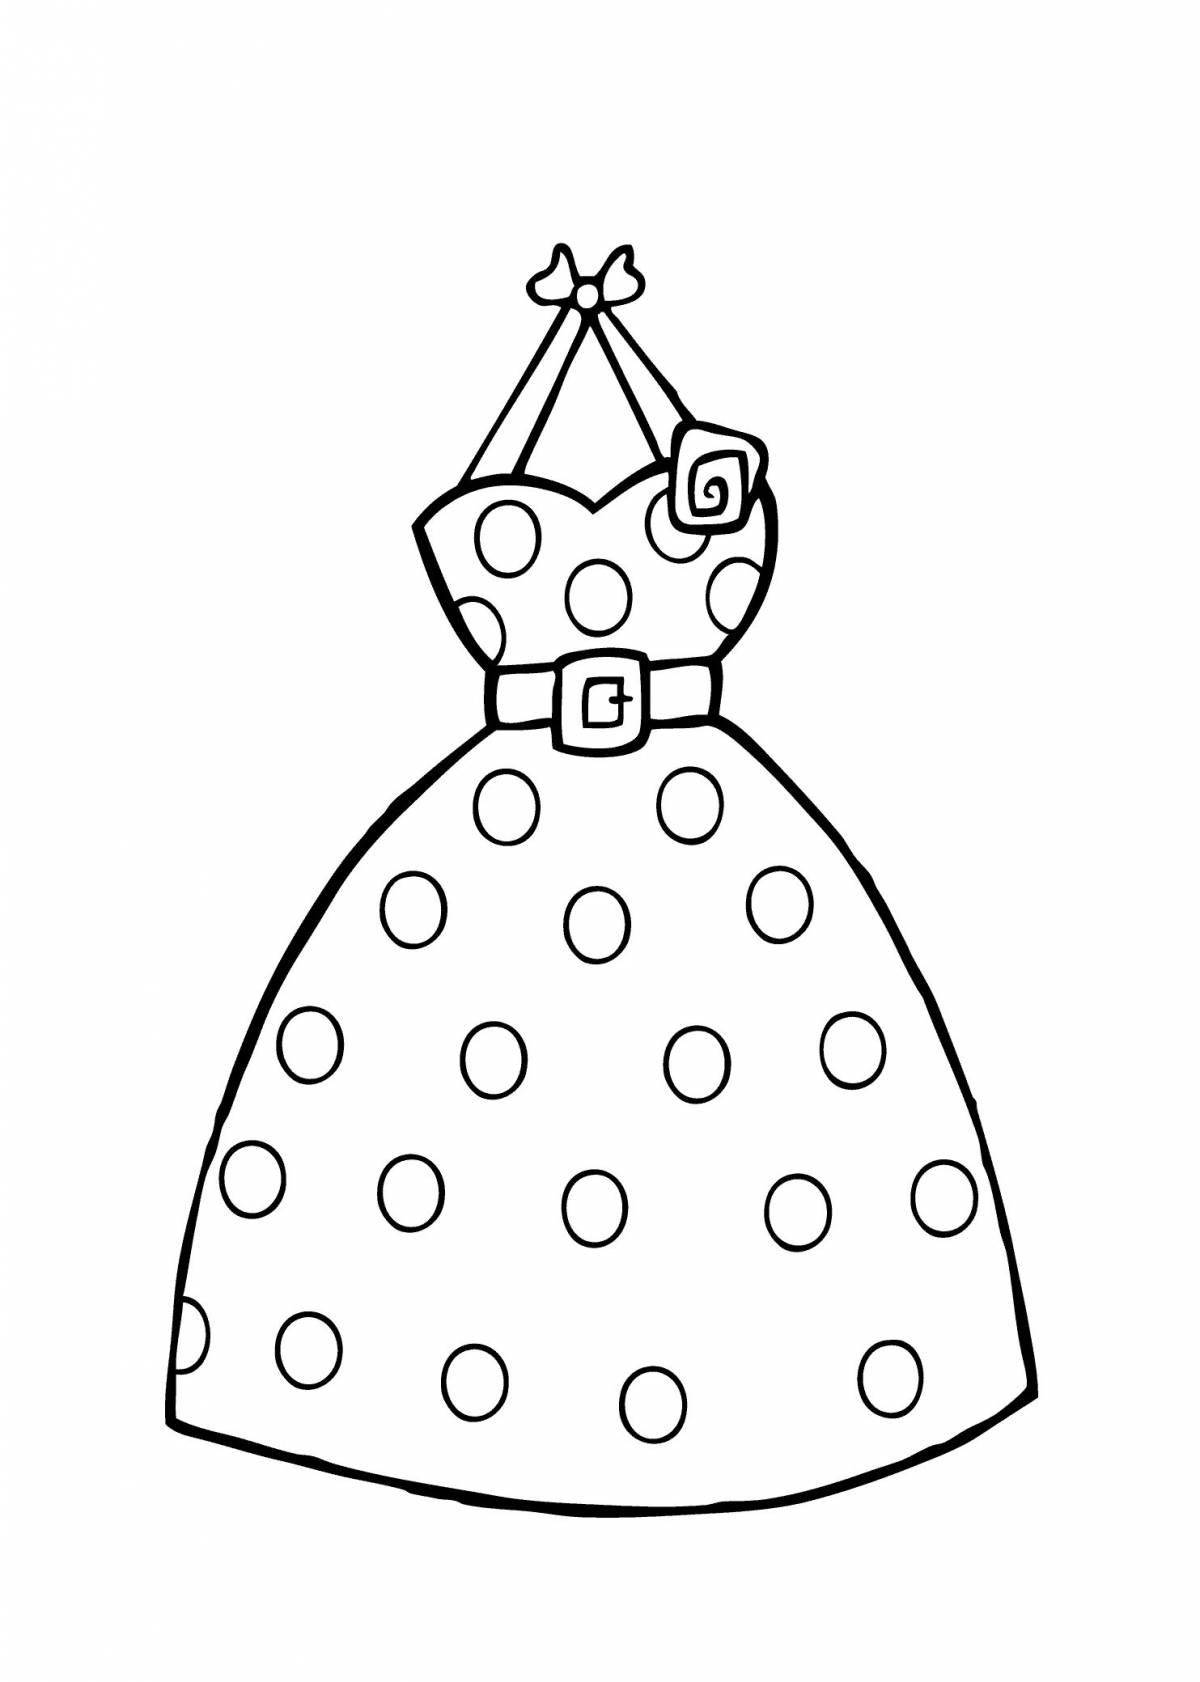 Раскраска гламурное платье для детей 5-6 лет